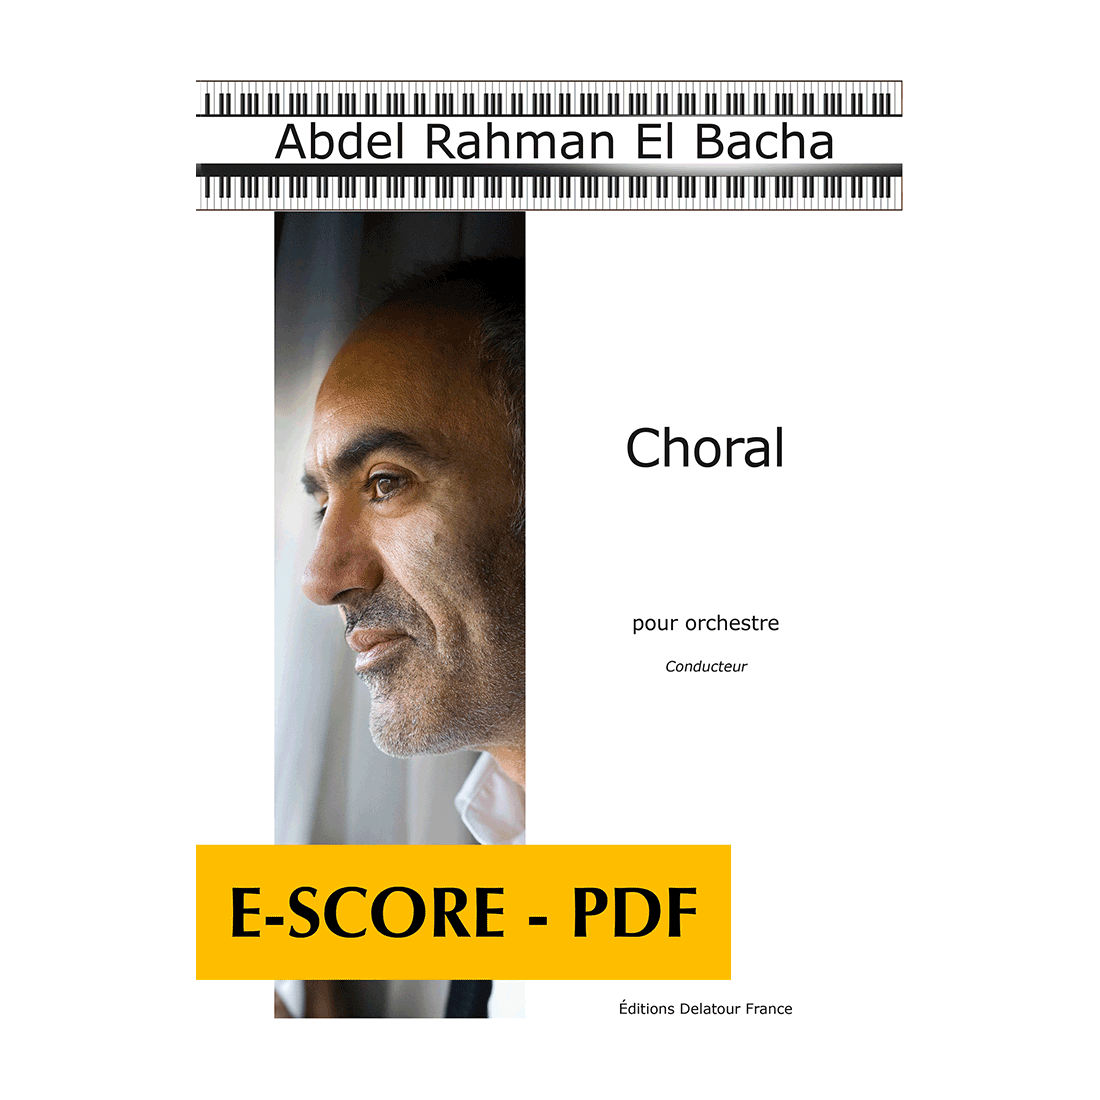 Choral pour orchestre (CONDUCTEUR) - E-score PDF